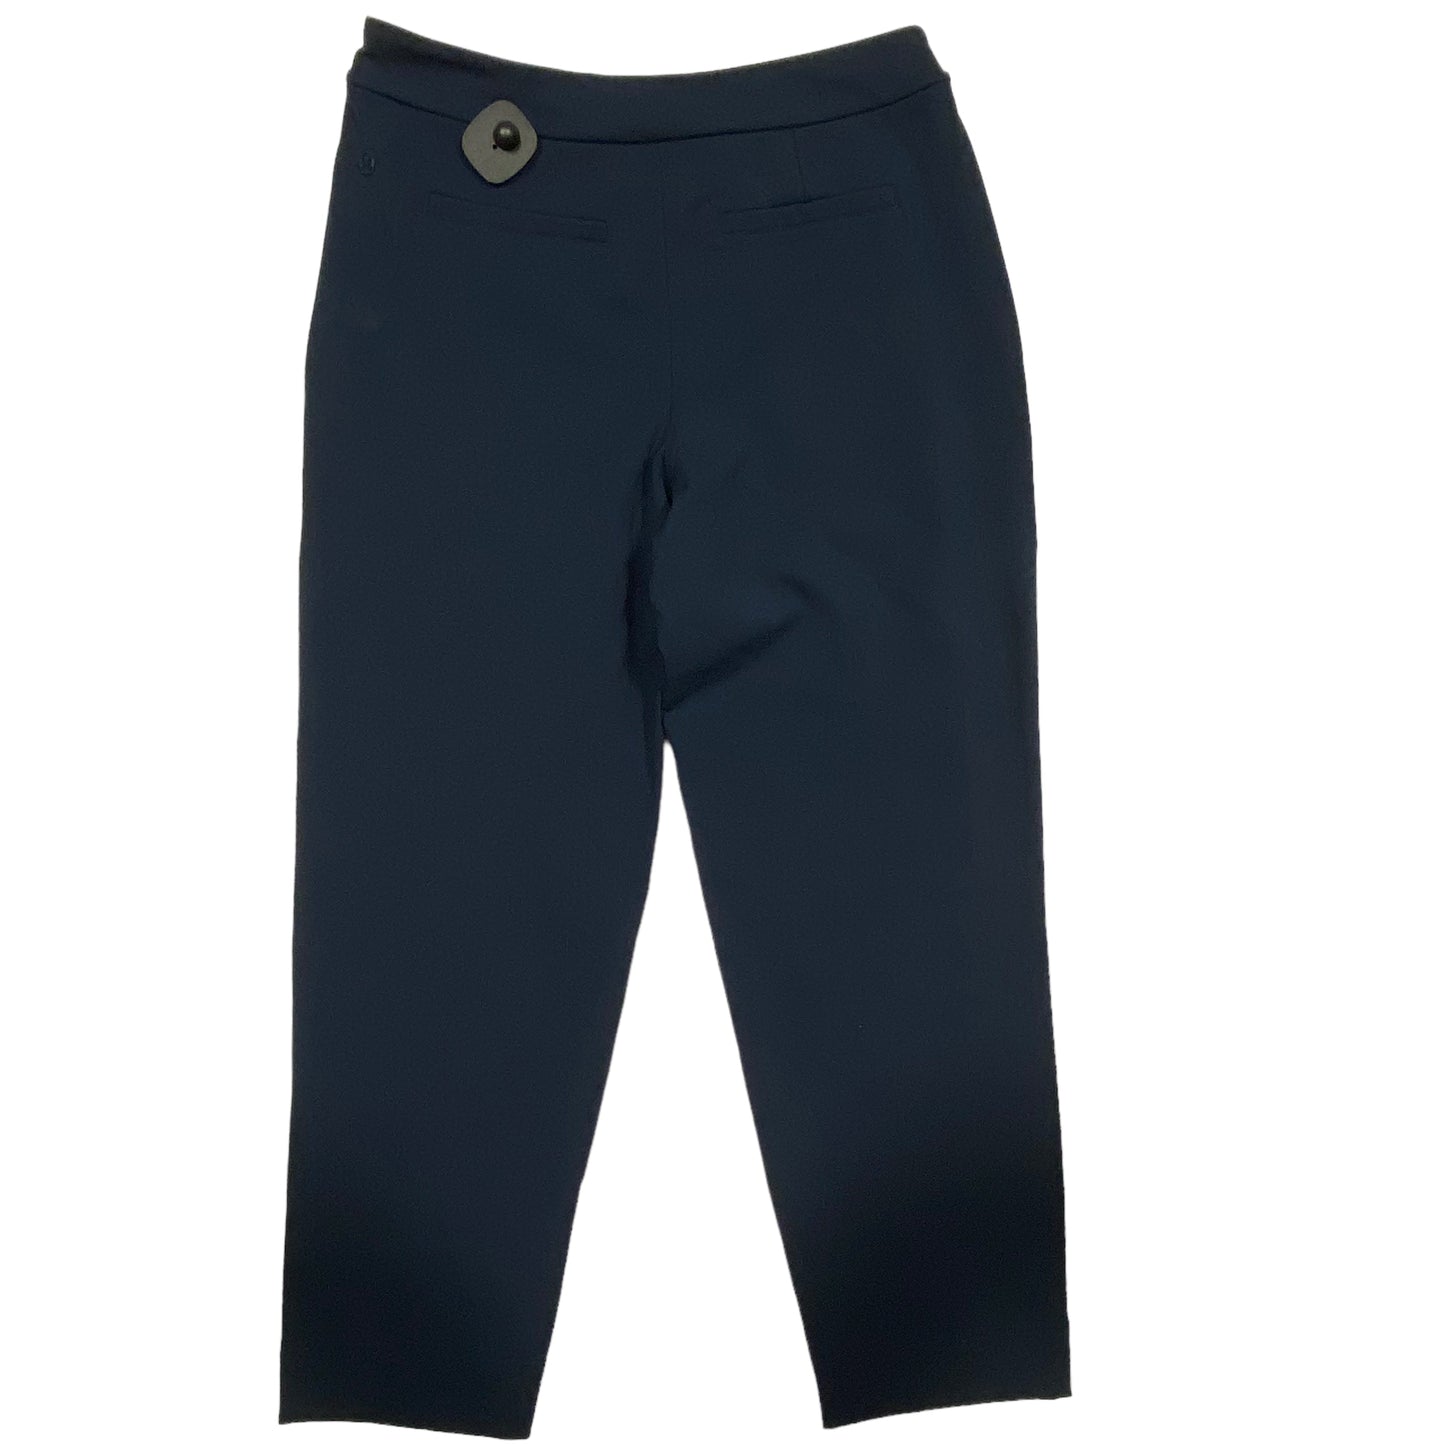 Navy Athletic Pants Lululemon, Size M